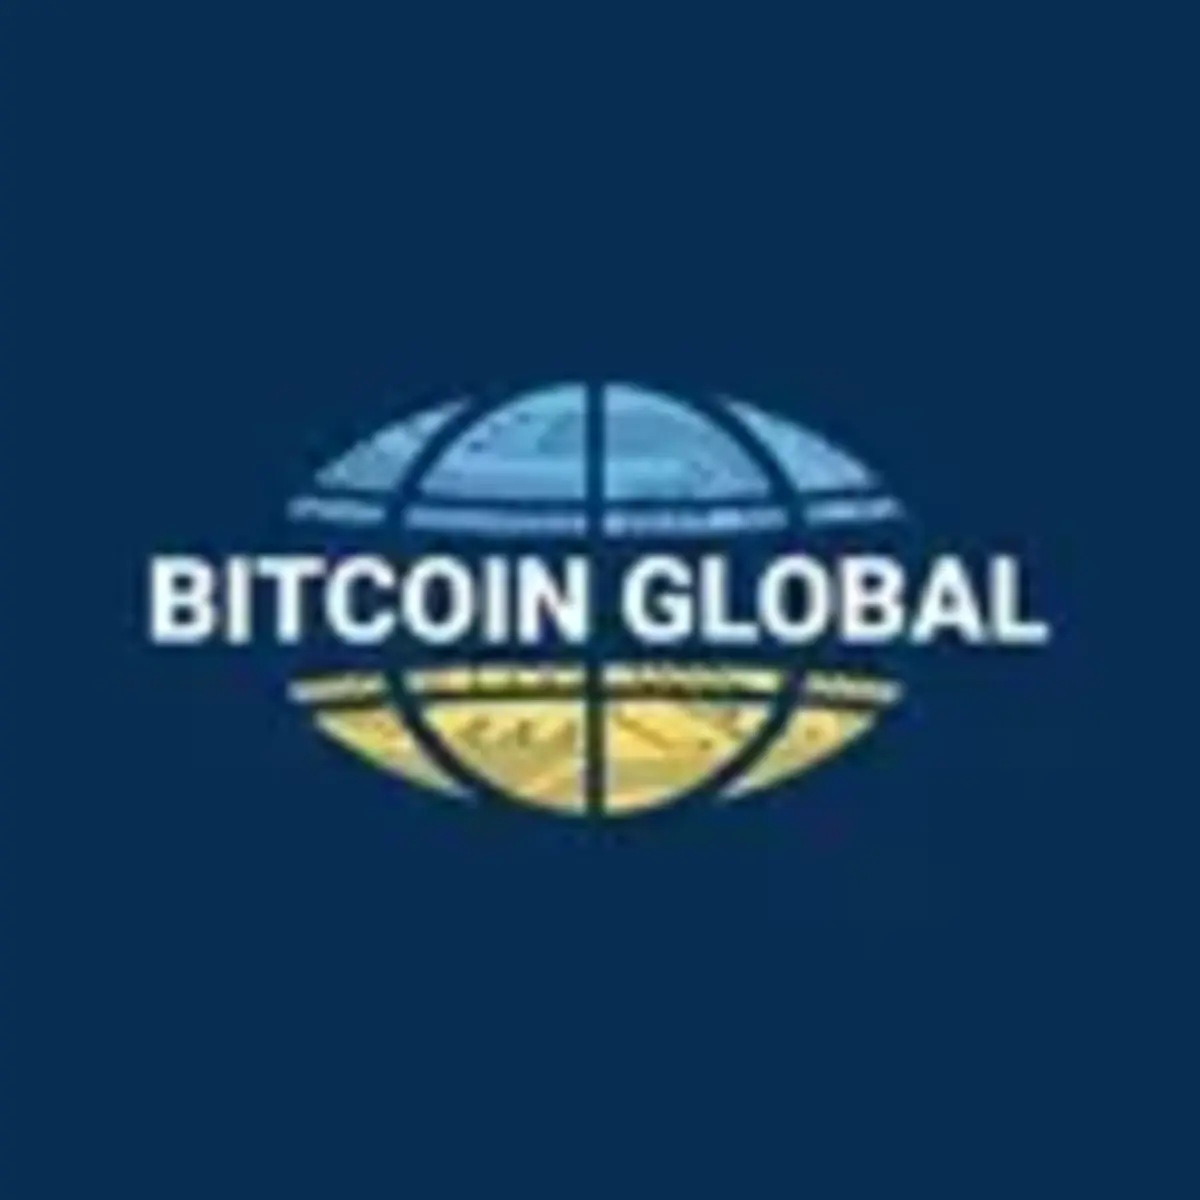 Bitcoin Global